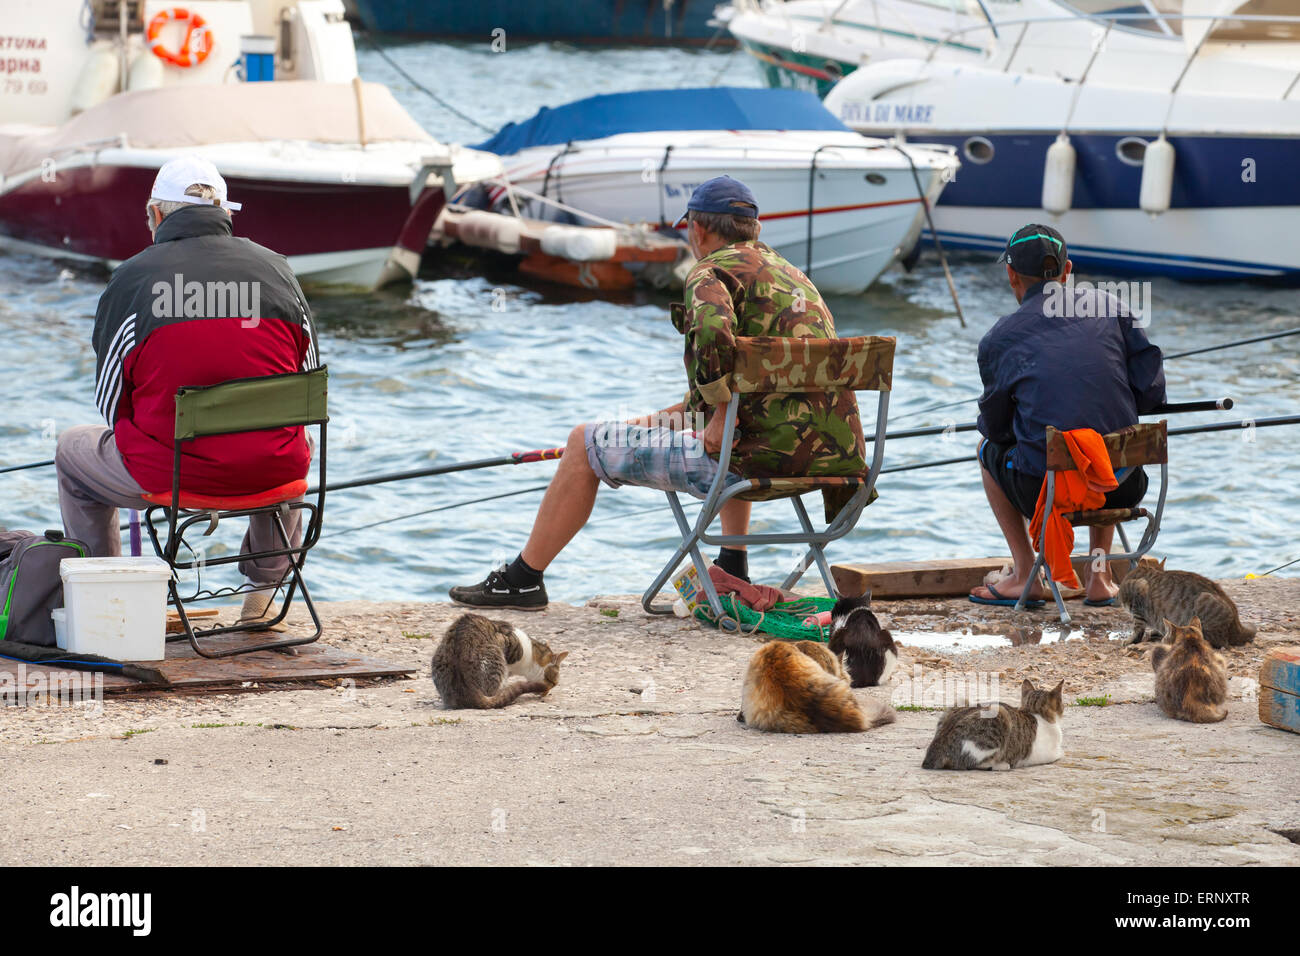 Varna, Bulgarien - 20. Juli 2014: Senior Fischer fangen Fische vom Ufer, Gruppe von Straßenkatzen warten auf Beute Stockfoto